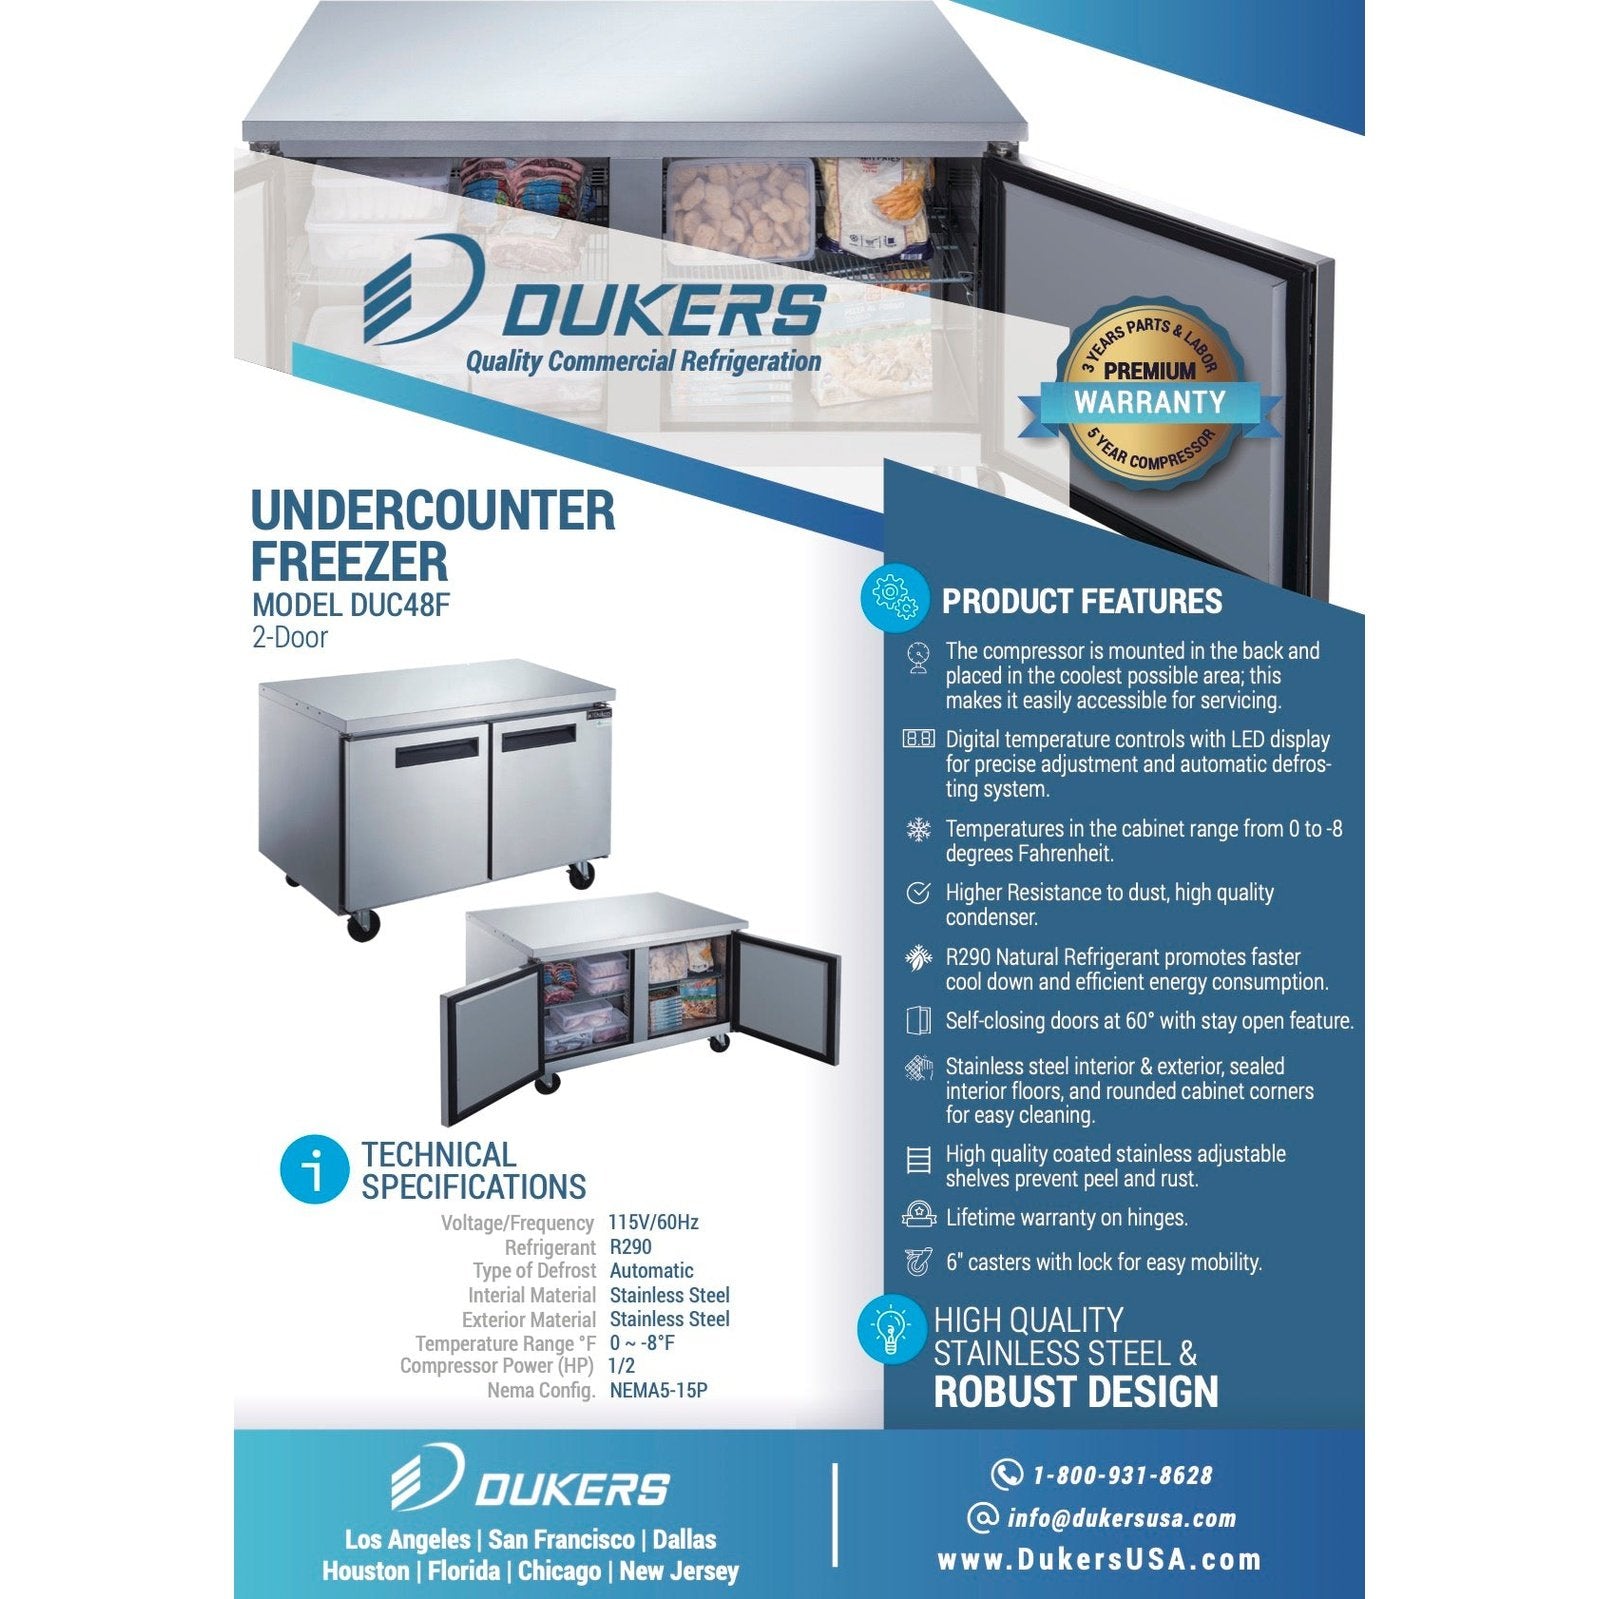 Dukers DUC48F 2-Door Undercounter Freezer in Stainless Steel